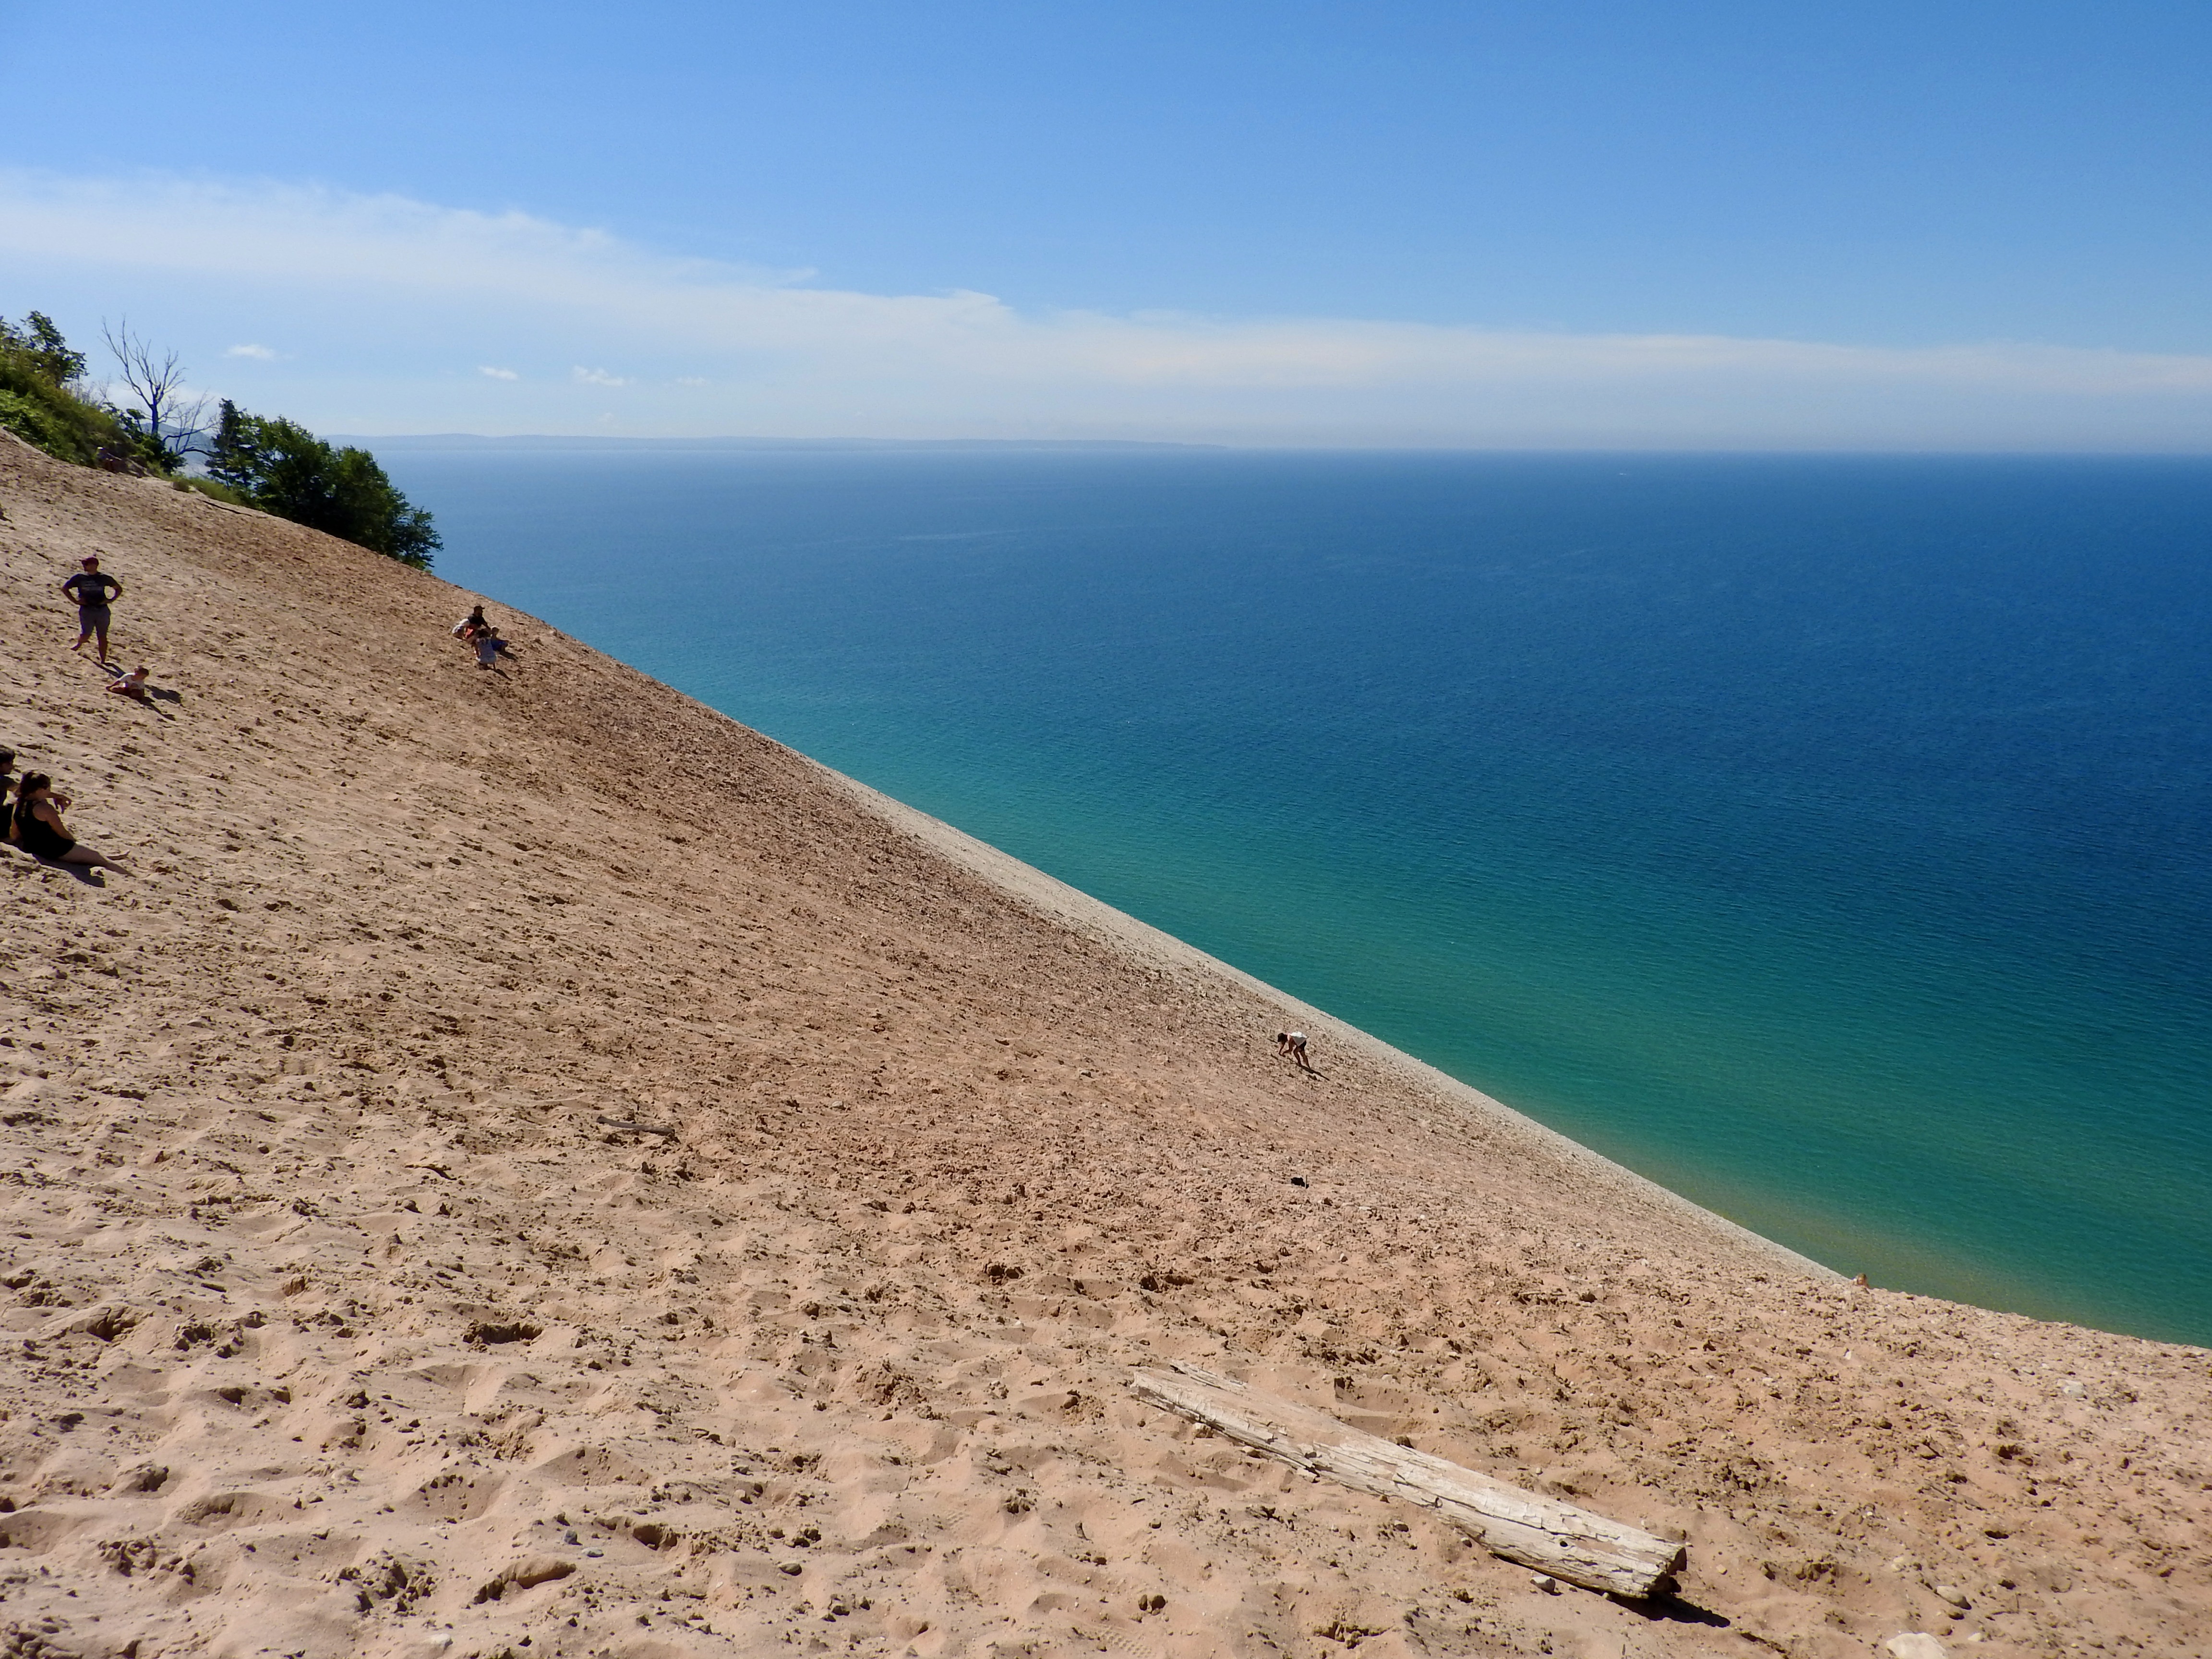 Lake Michigan Sand Dune. My own photo.